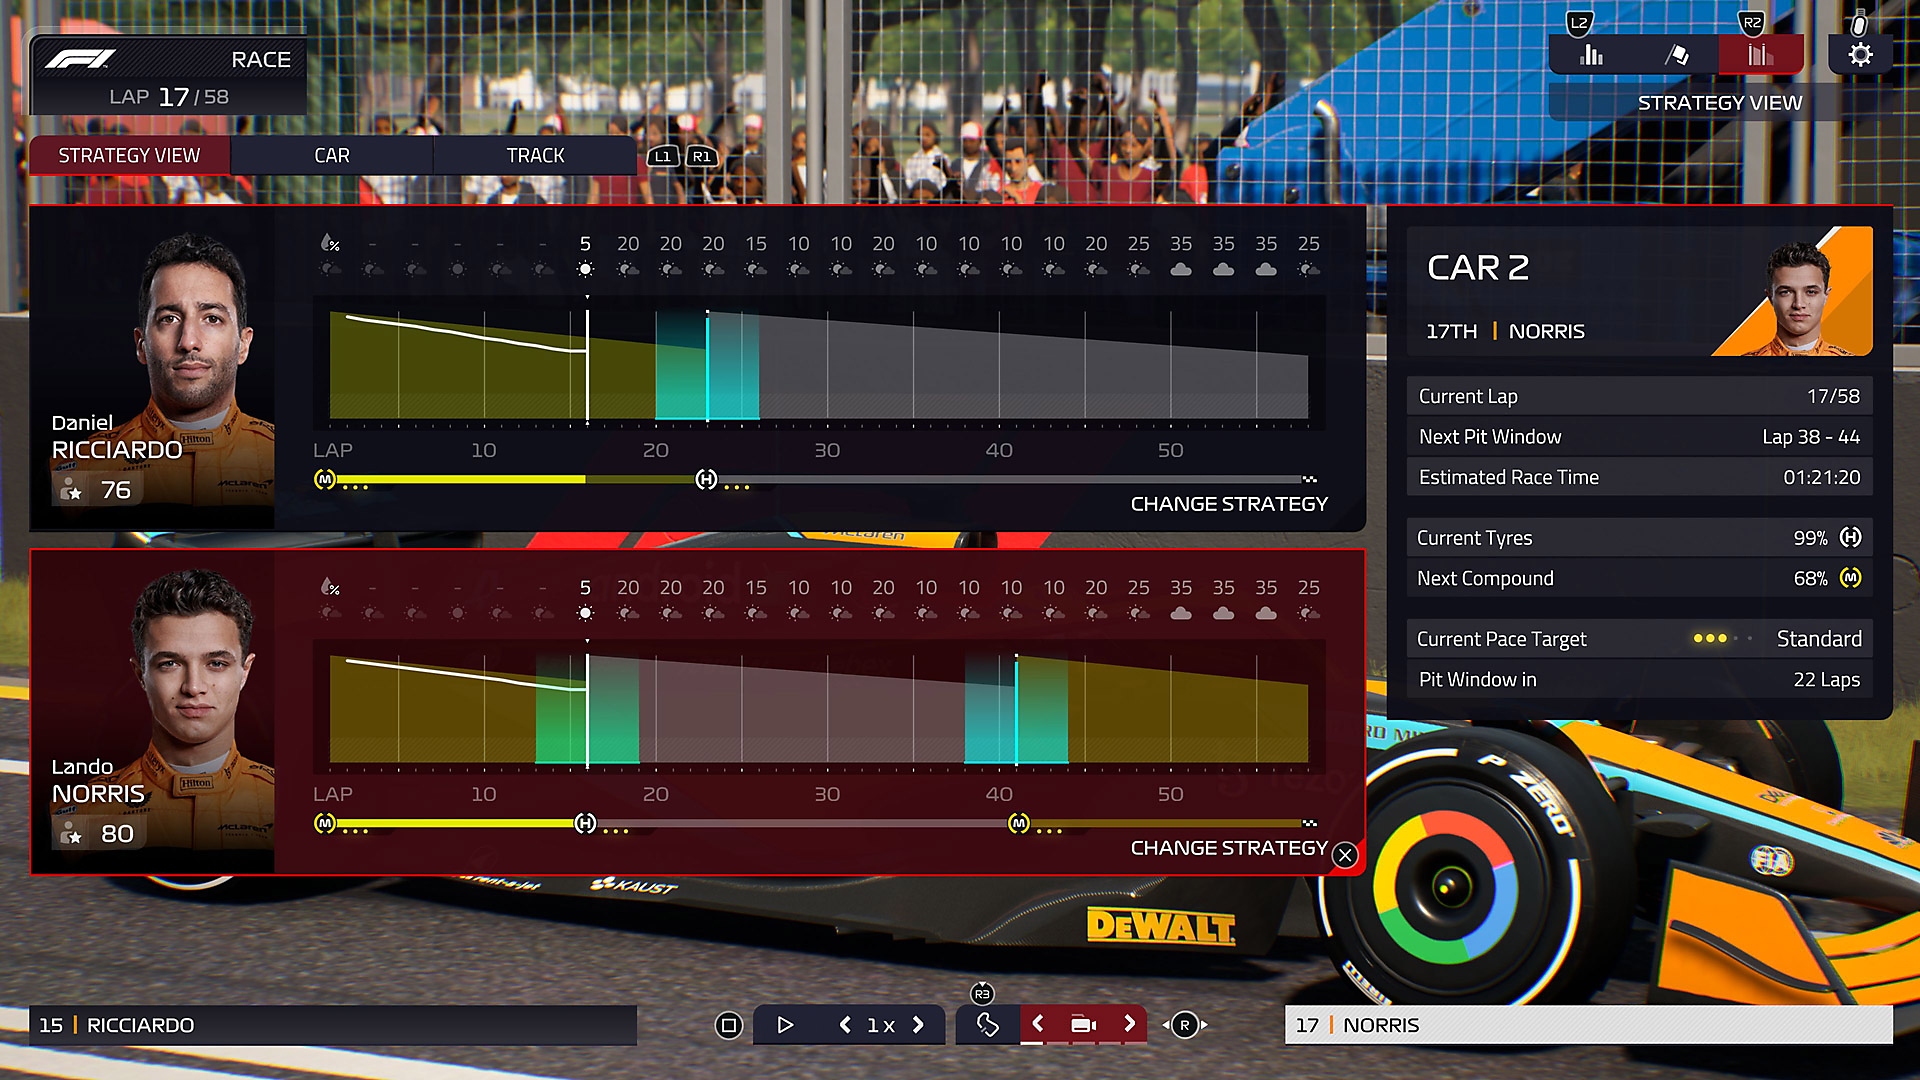 لقطة شاشة لواجهة المستخدم في لعبة F1 Manager 2022 تظهر فيها مقارنة بين متسابقين اثنين